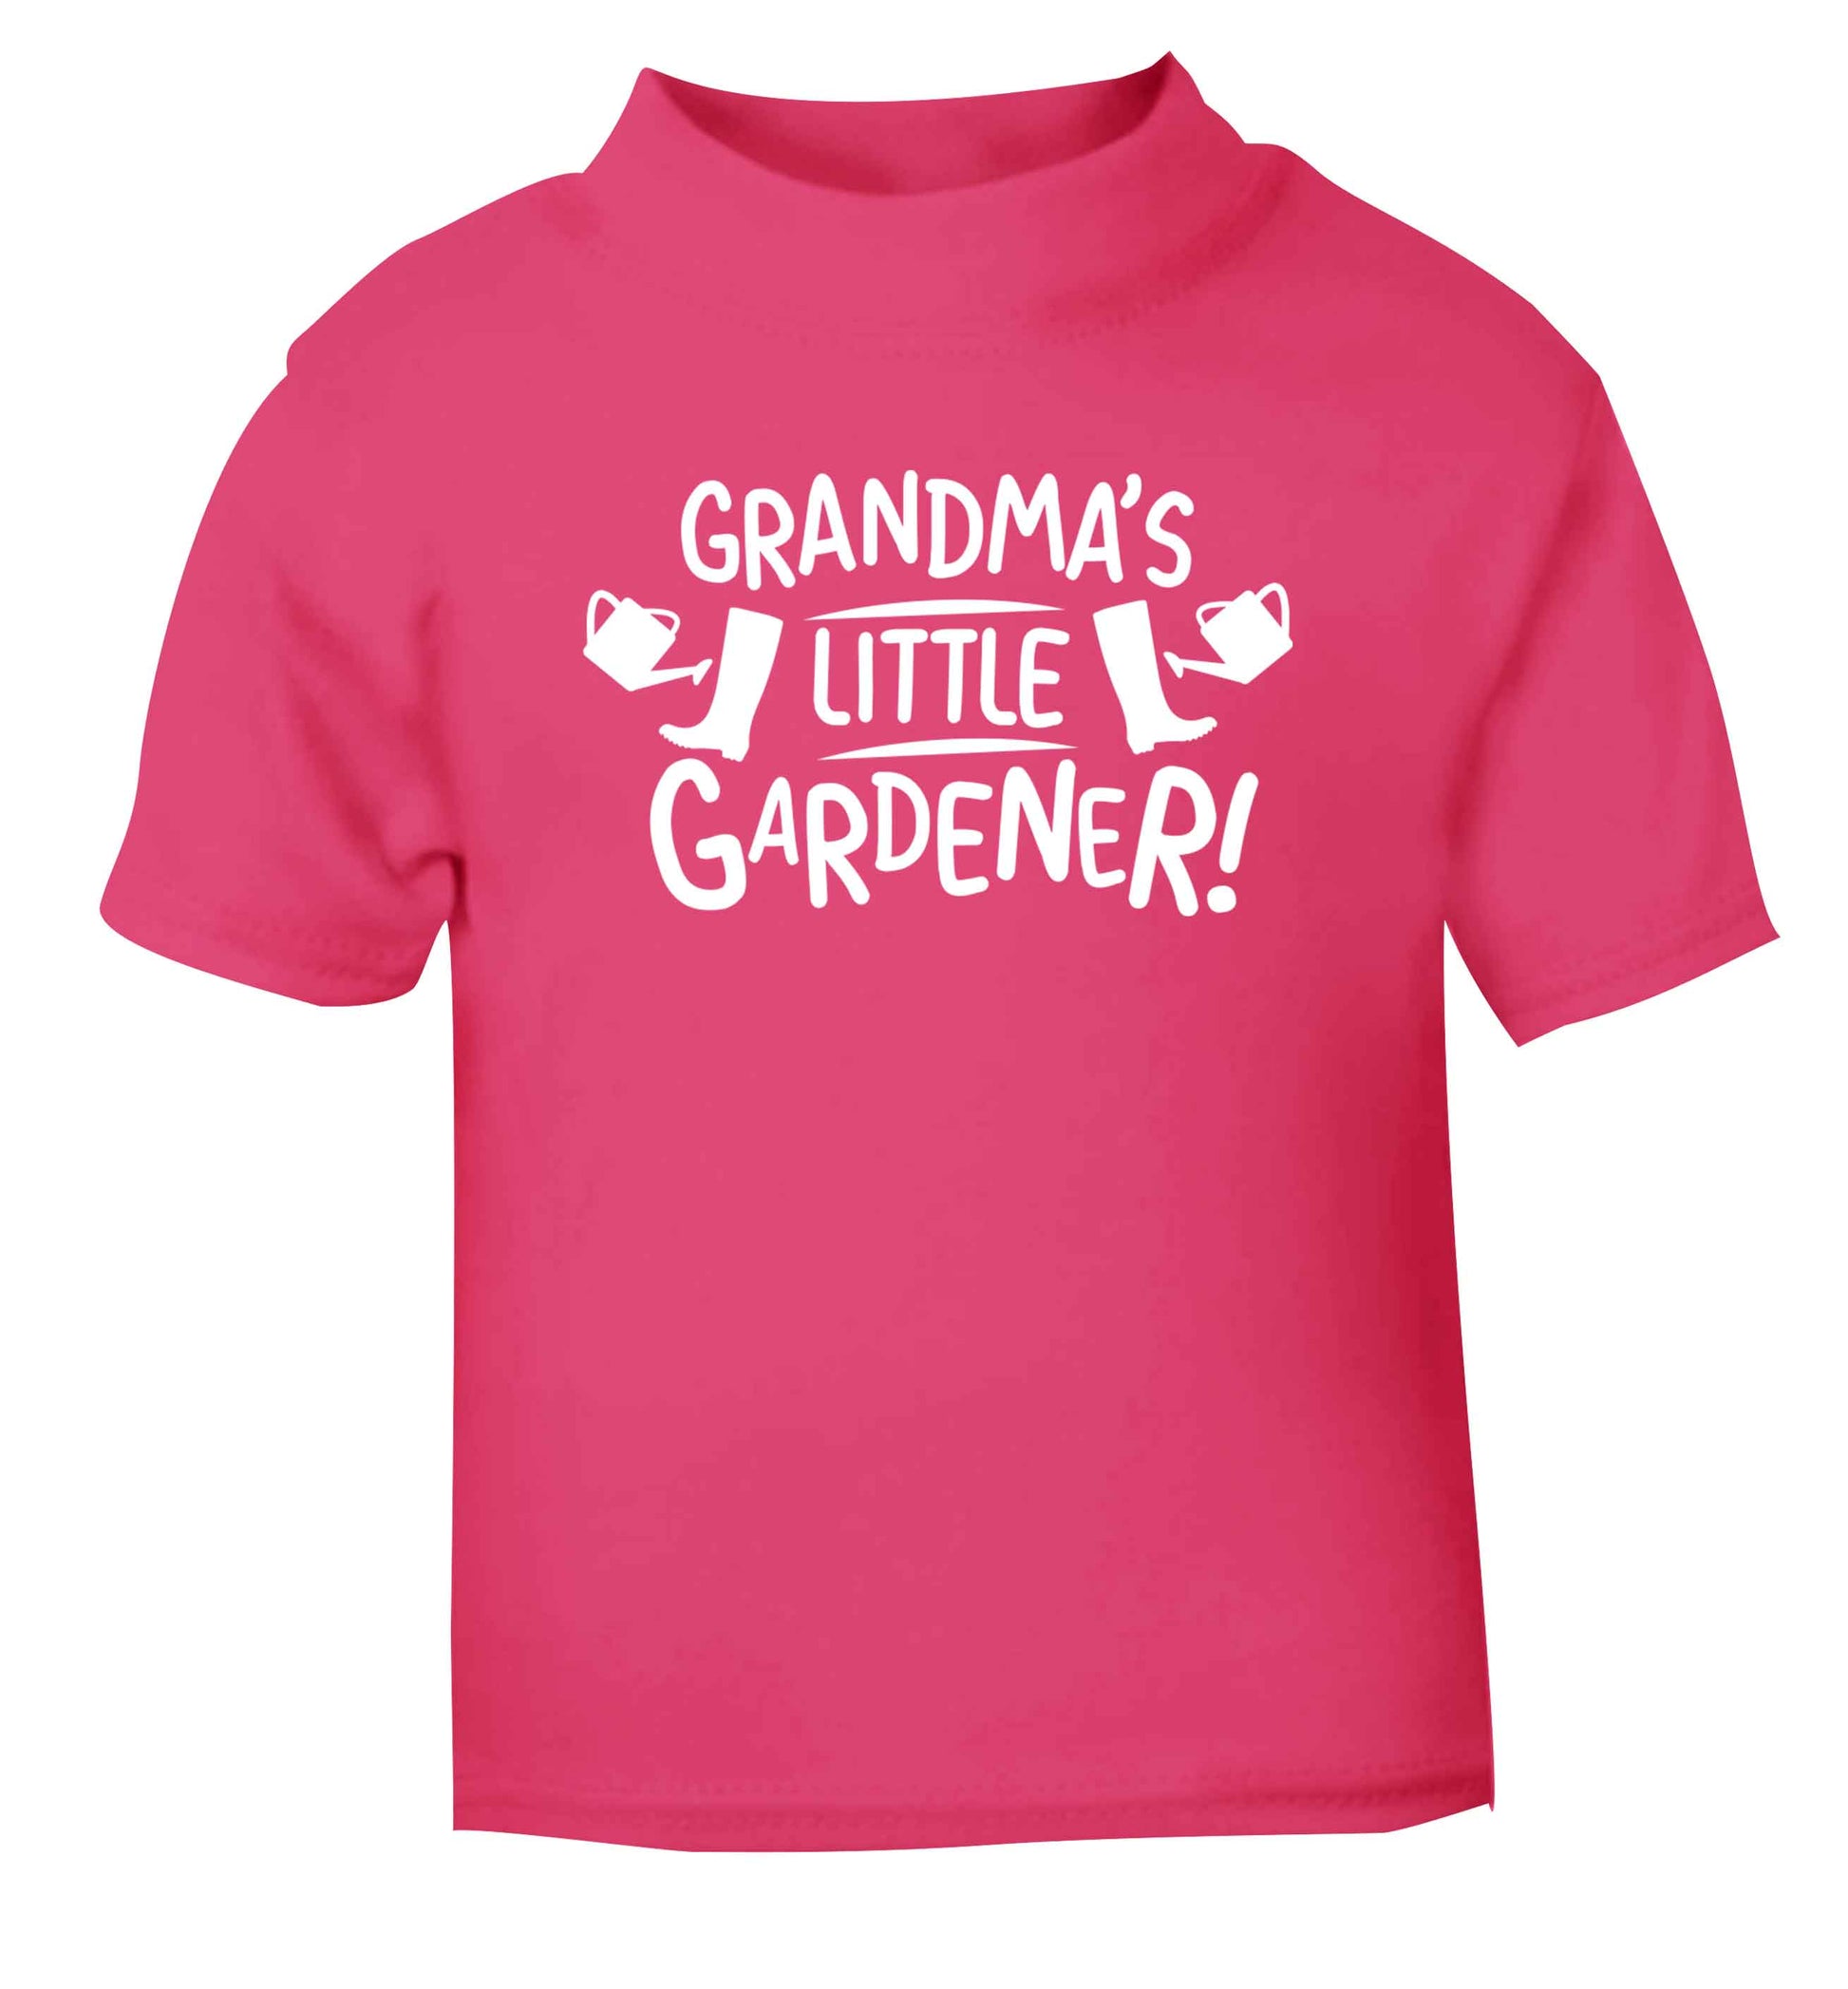 Grandma's little gardener pink Baby Toddler Tshirt 2 Years